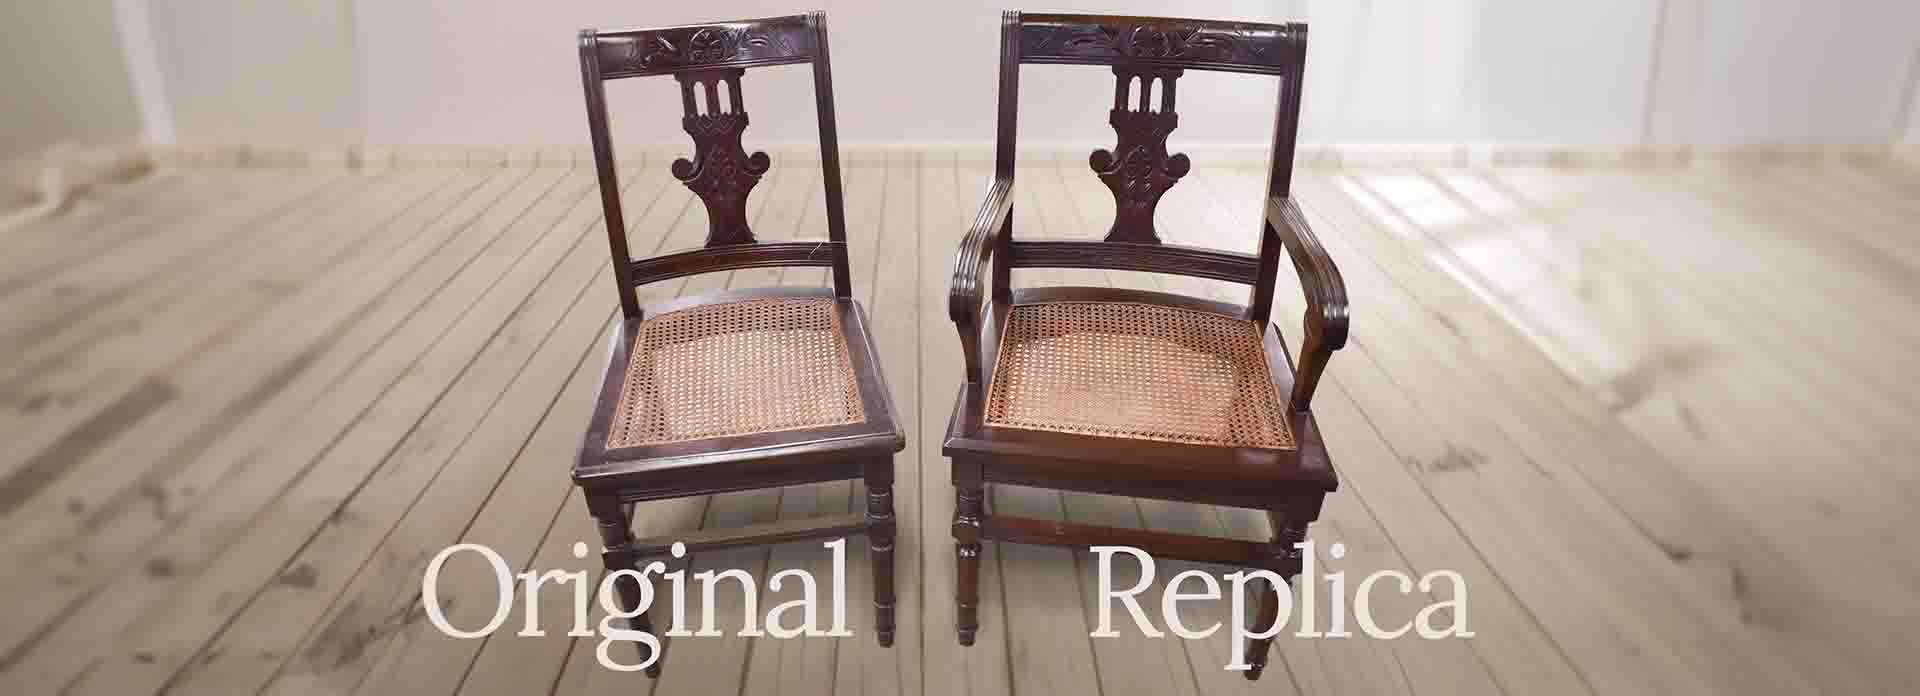 original and replica chair